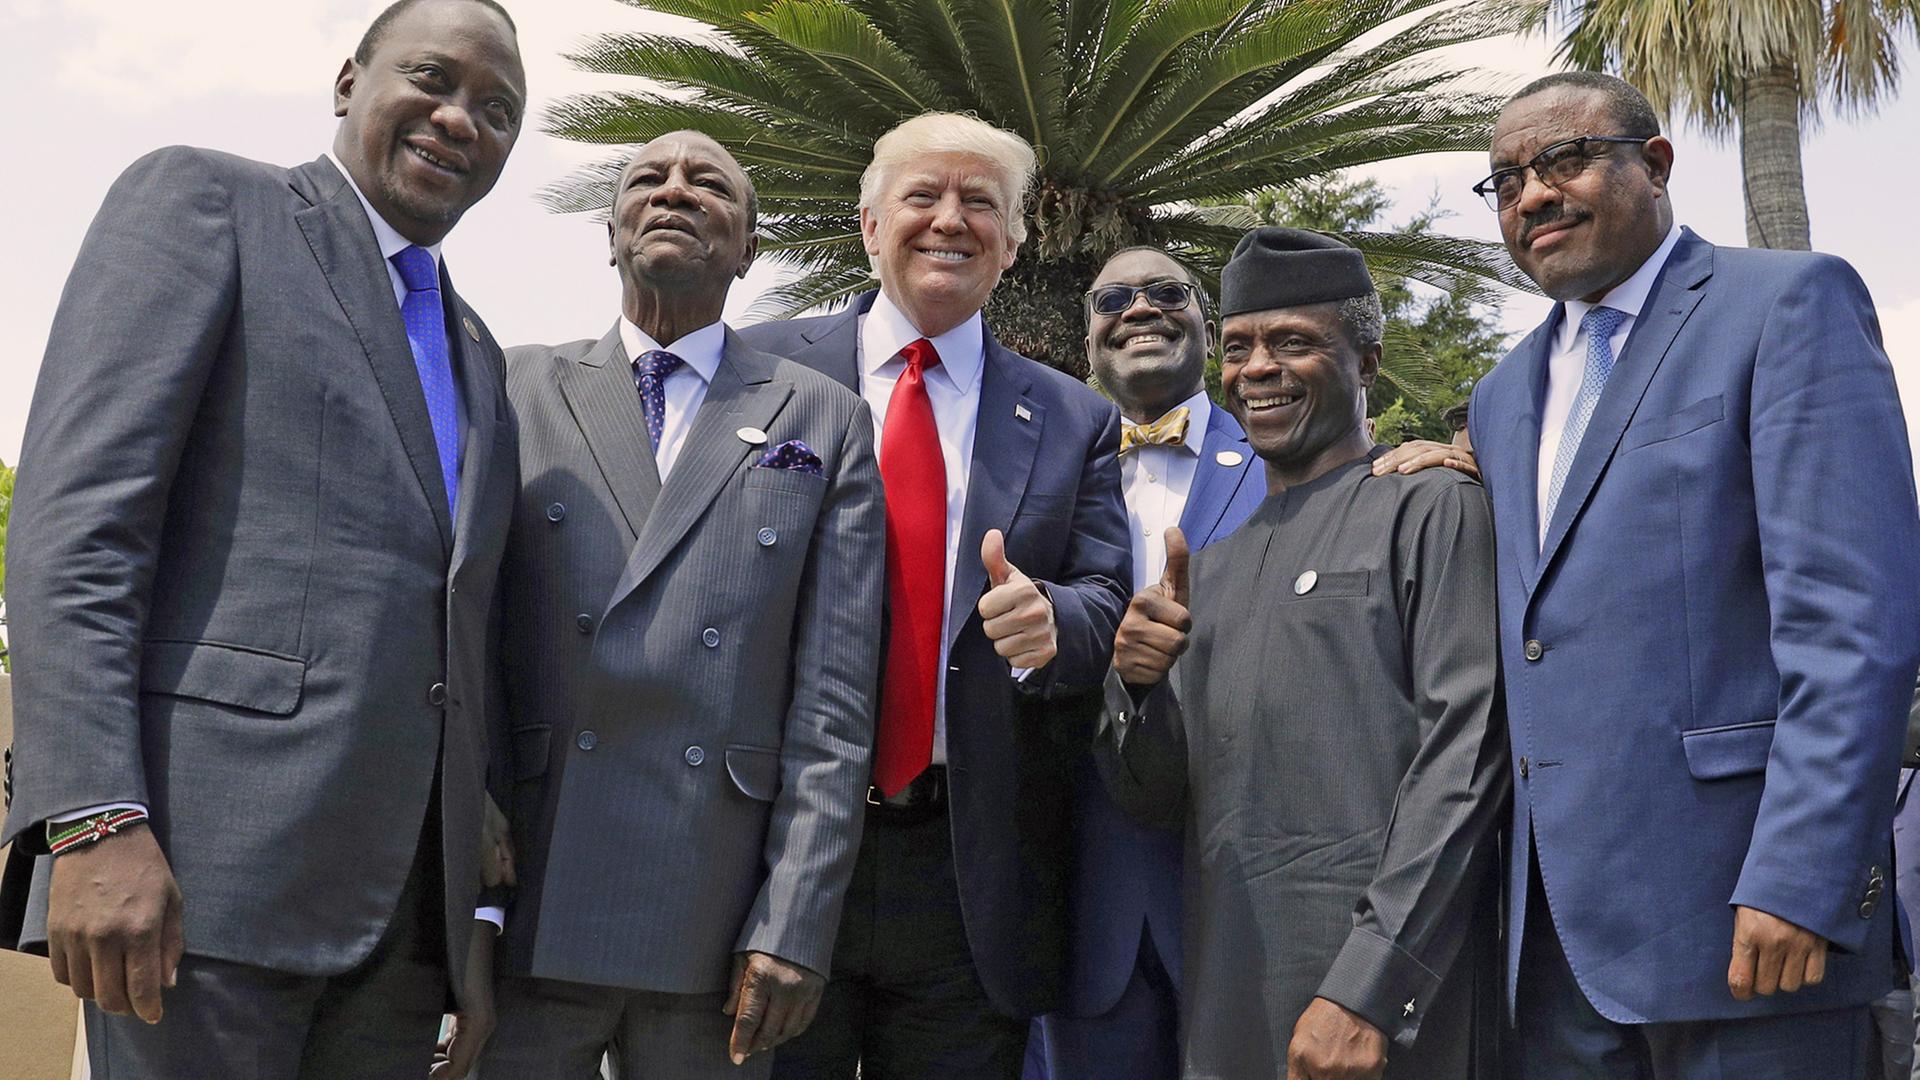 Am 27.5.2017 beim G7-Gipfel in Taormina posieren (v.l.n.r.) Kenias Präsident Uhuru Kenyatta, der Chef der Afrikanischen Union Alpha Conde, US-Präsident Donald Trump, der Präsident der Afrikanischen Entwicklungsbank Bank Akinwumi Adesina, Nigerias Vizepräsident Yemi Osinbajo und Äthiopiens Premierminister Haile Mariam Desalegn unter Palmen für die Fotografen.